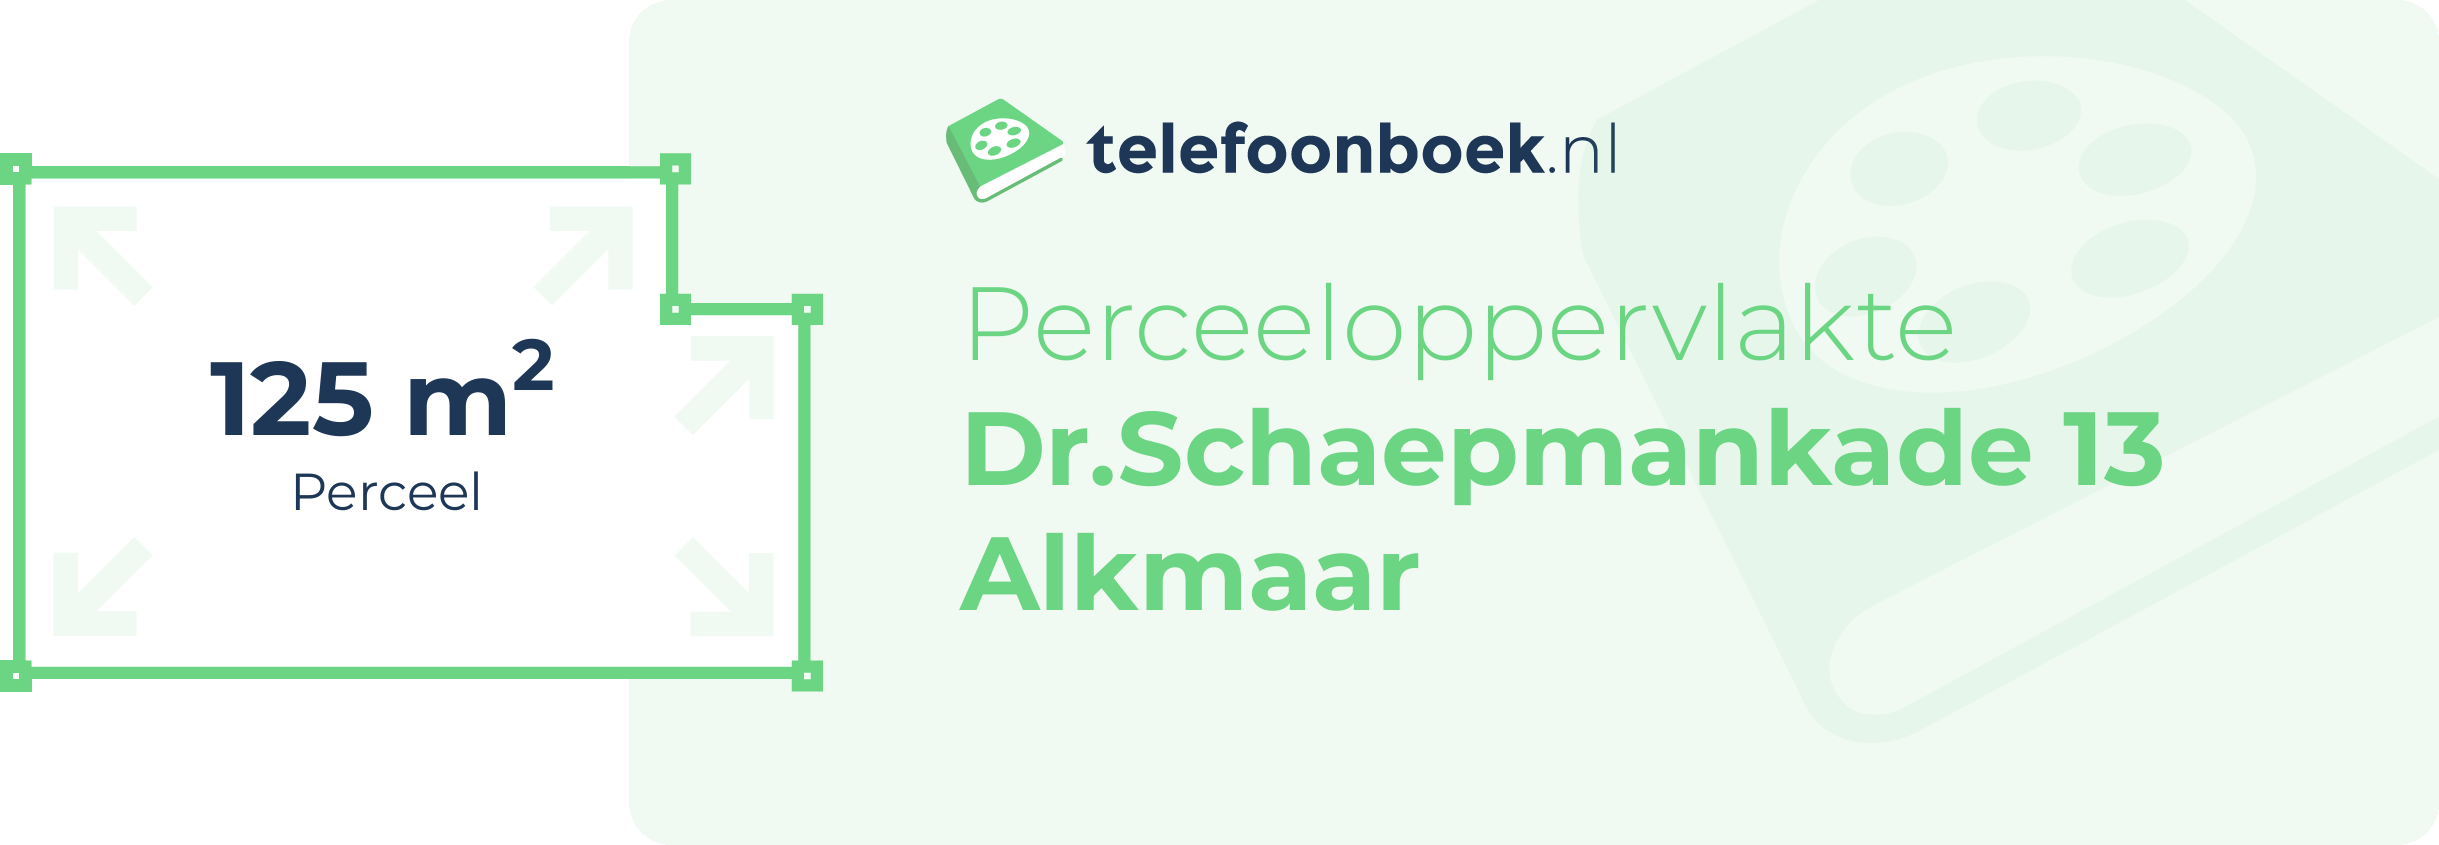 Perceeloppervlakte Dr.Schaepmankade 13 Alkmaar